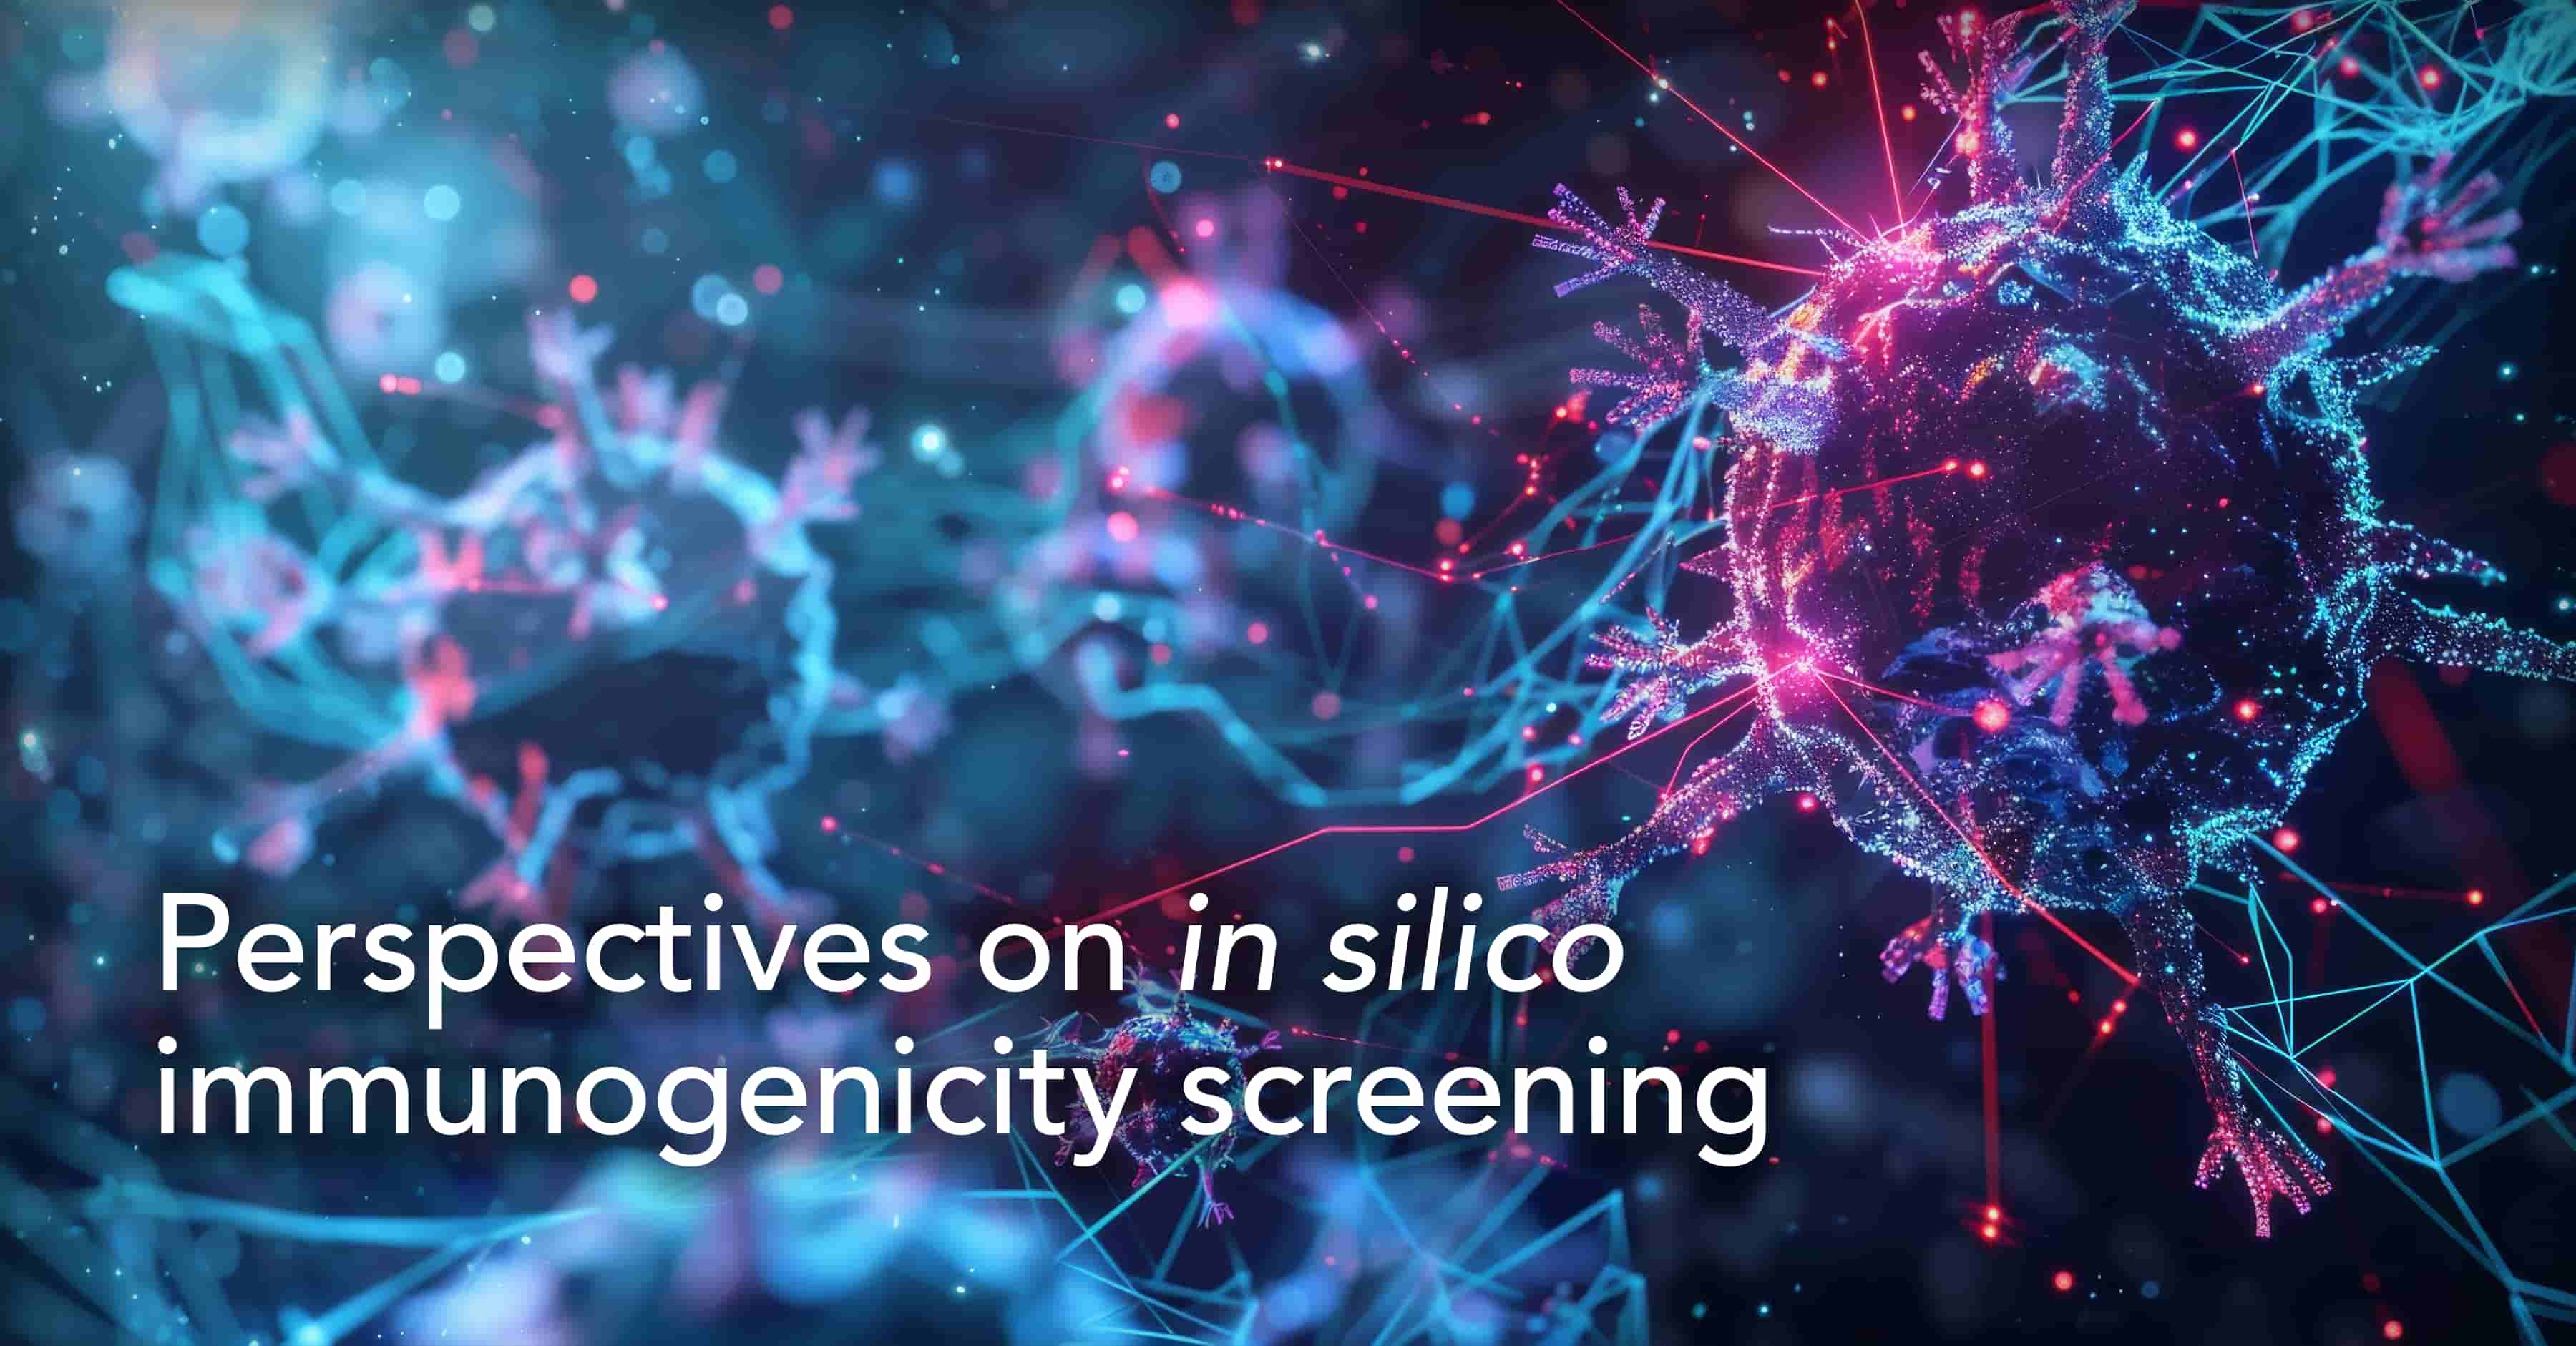 In silico immunogenicity screening